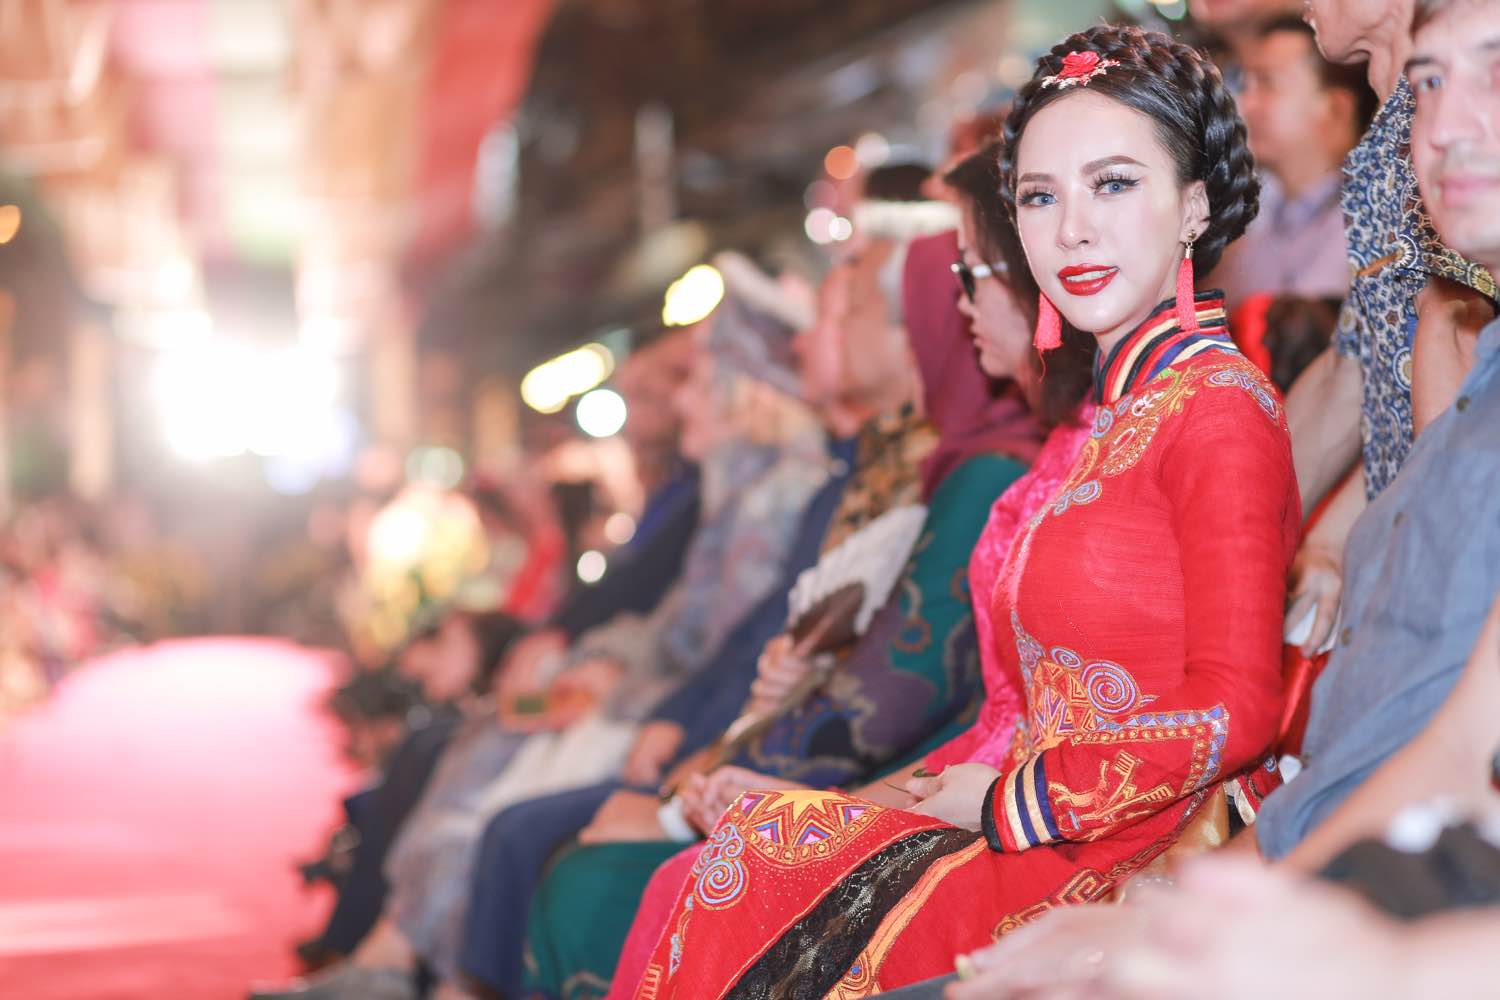 Á hậu Ngọc Quỳnh diện áo dài đỏ nổi bật tại sự kiện